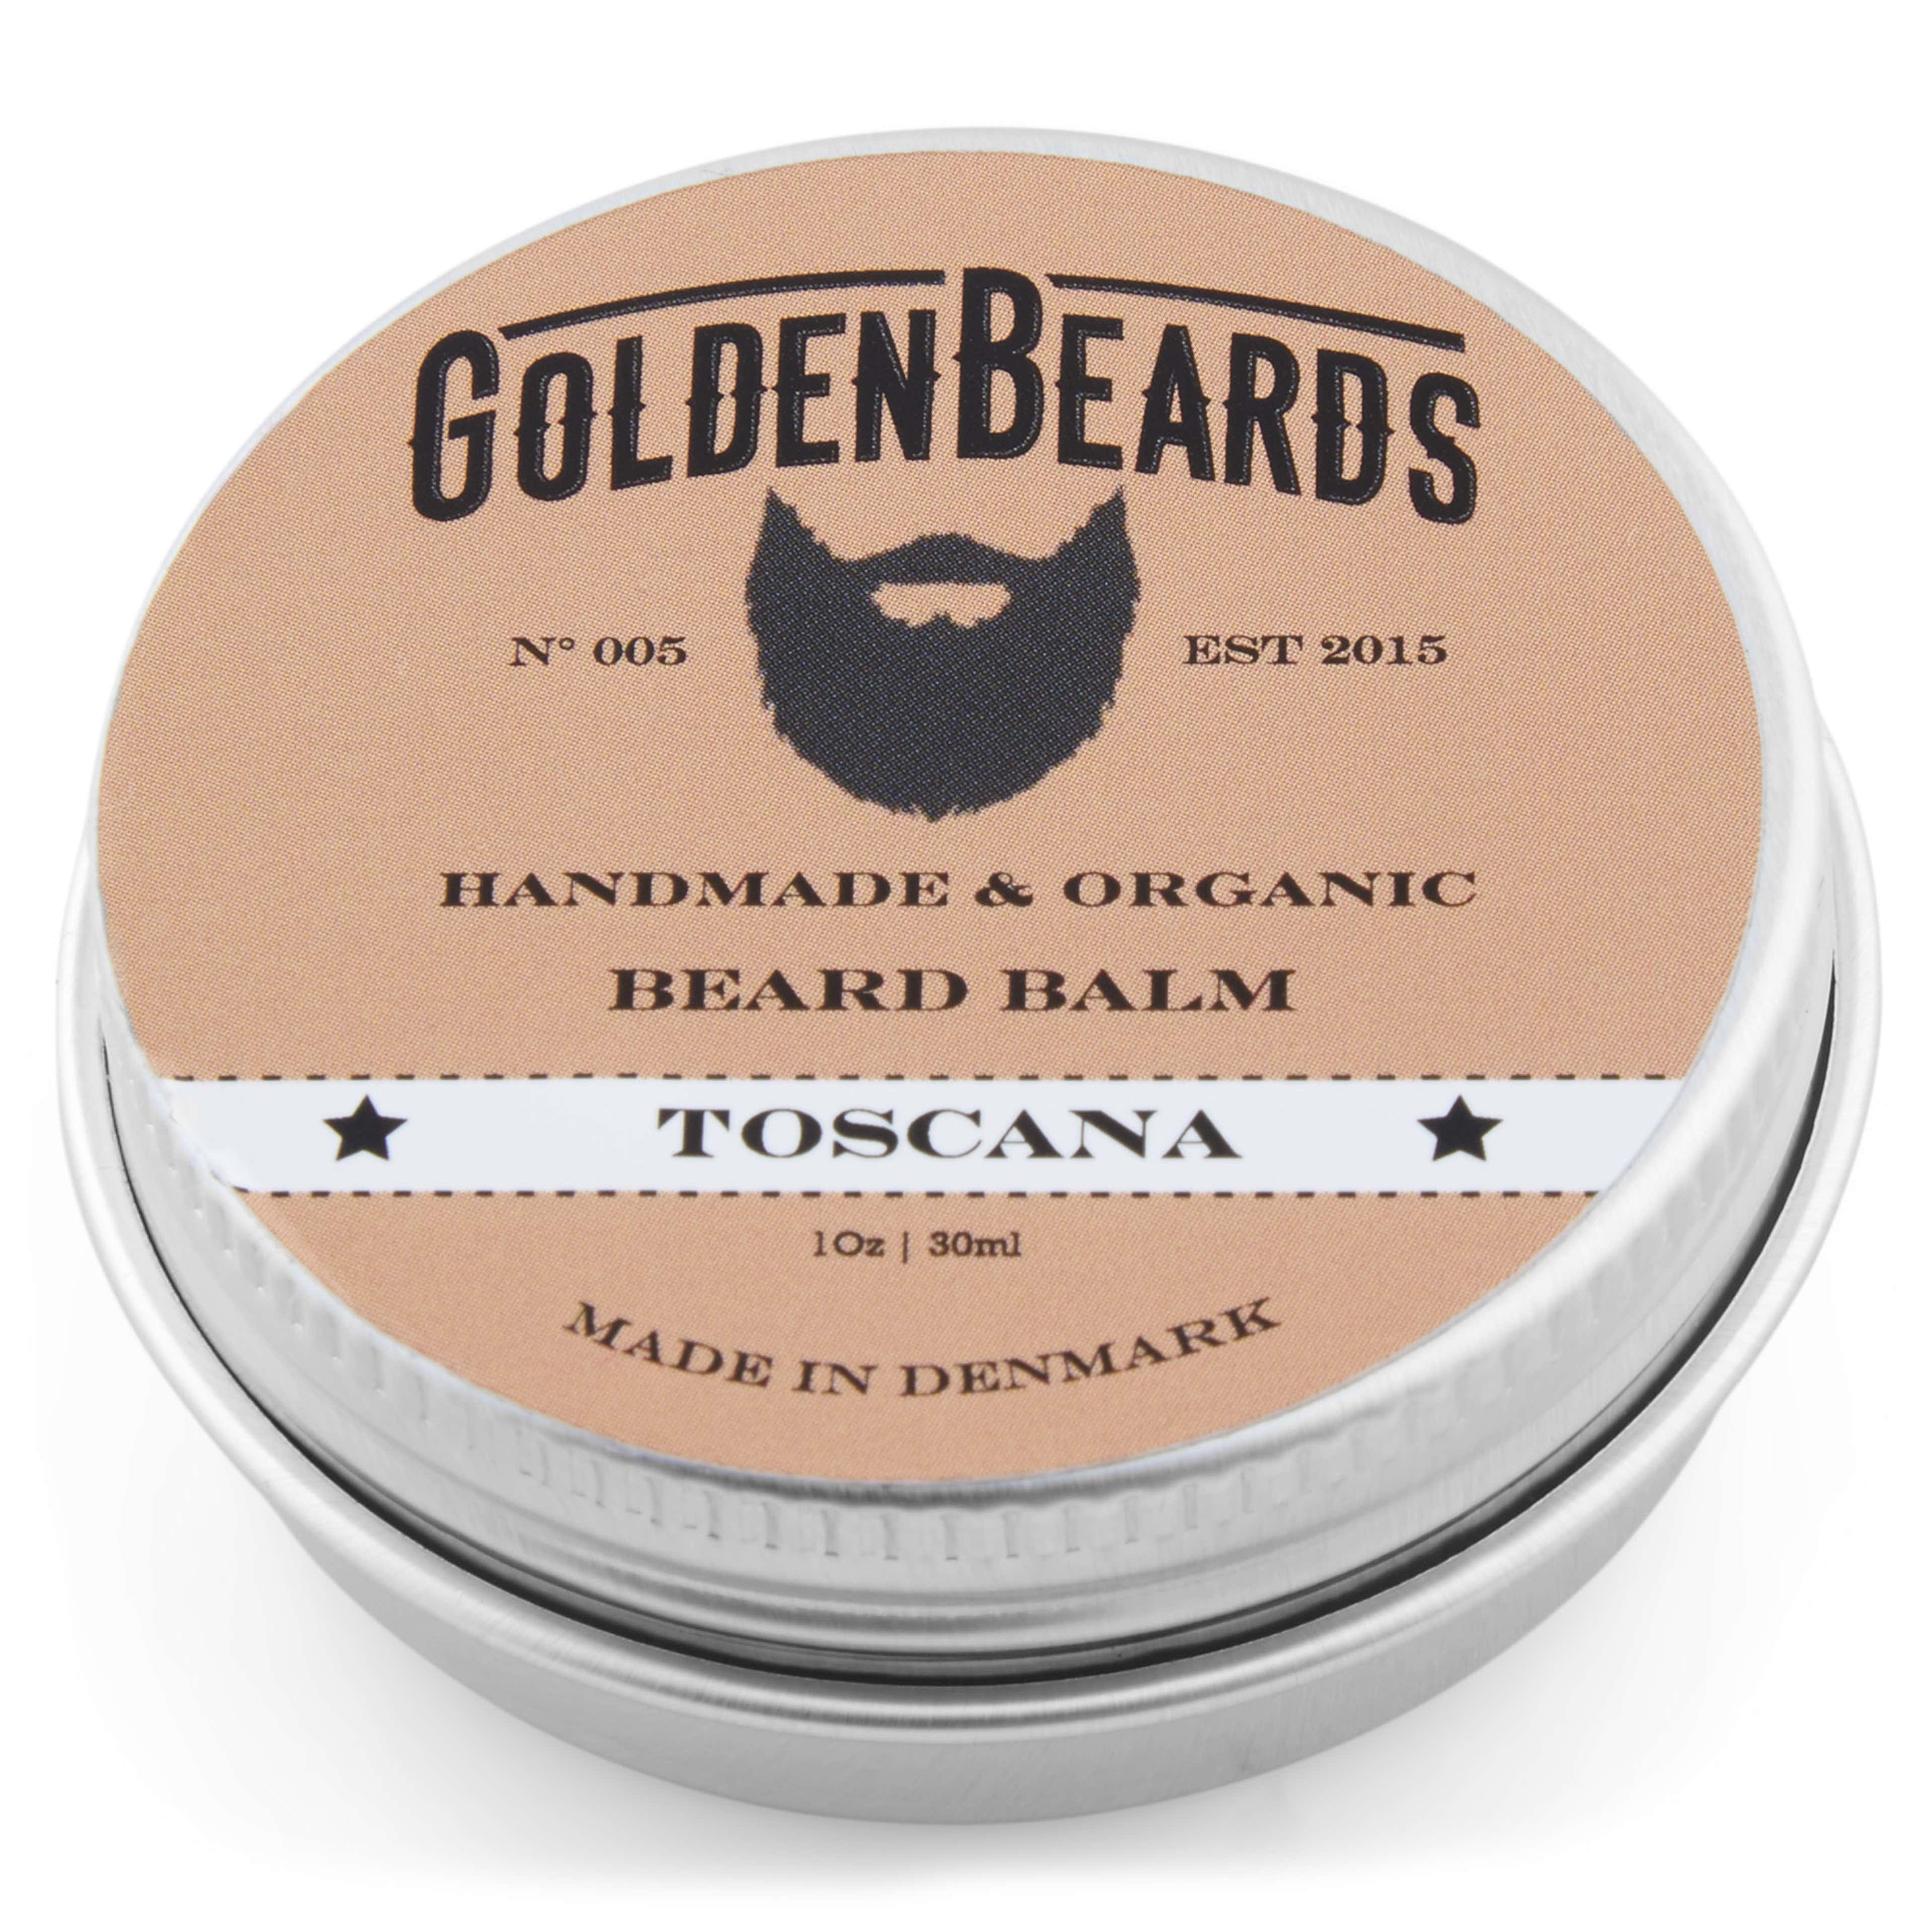 Bálsamo para barba orgánico Toscana